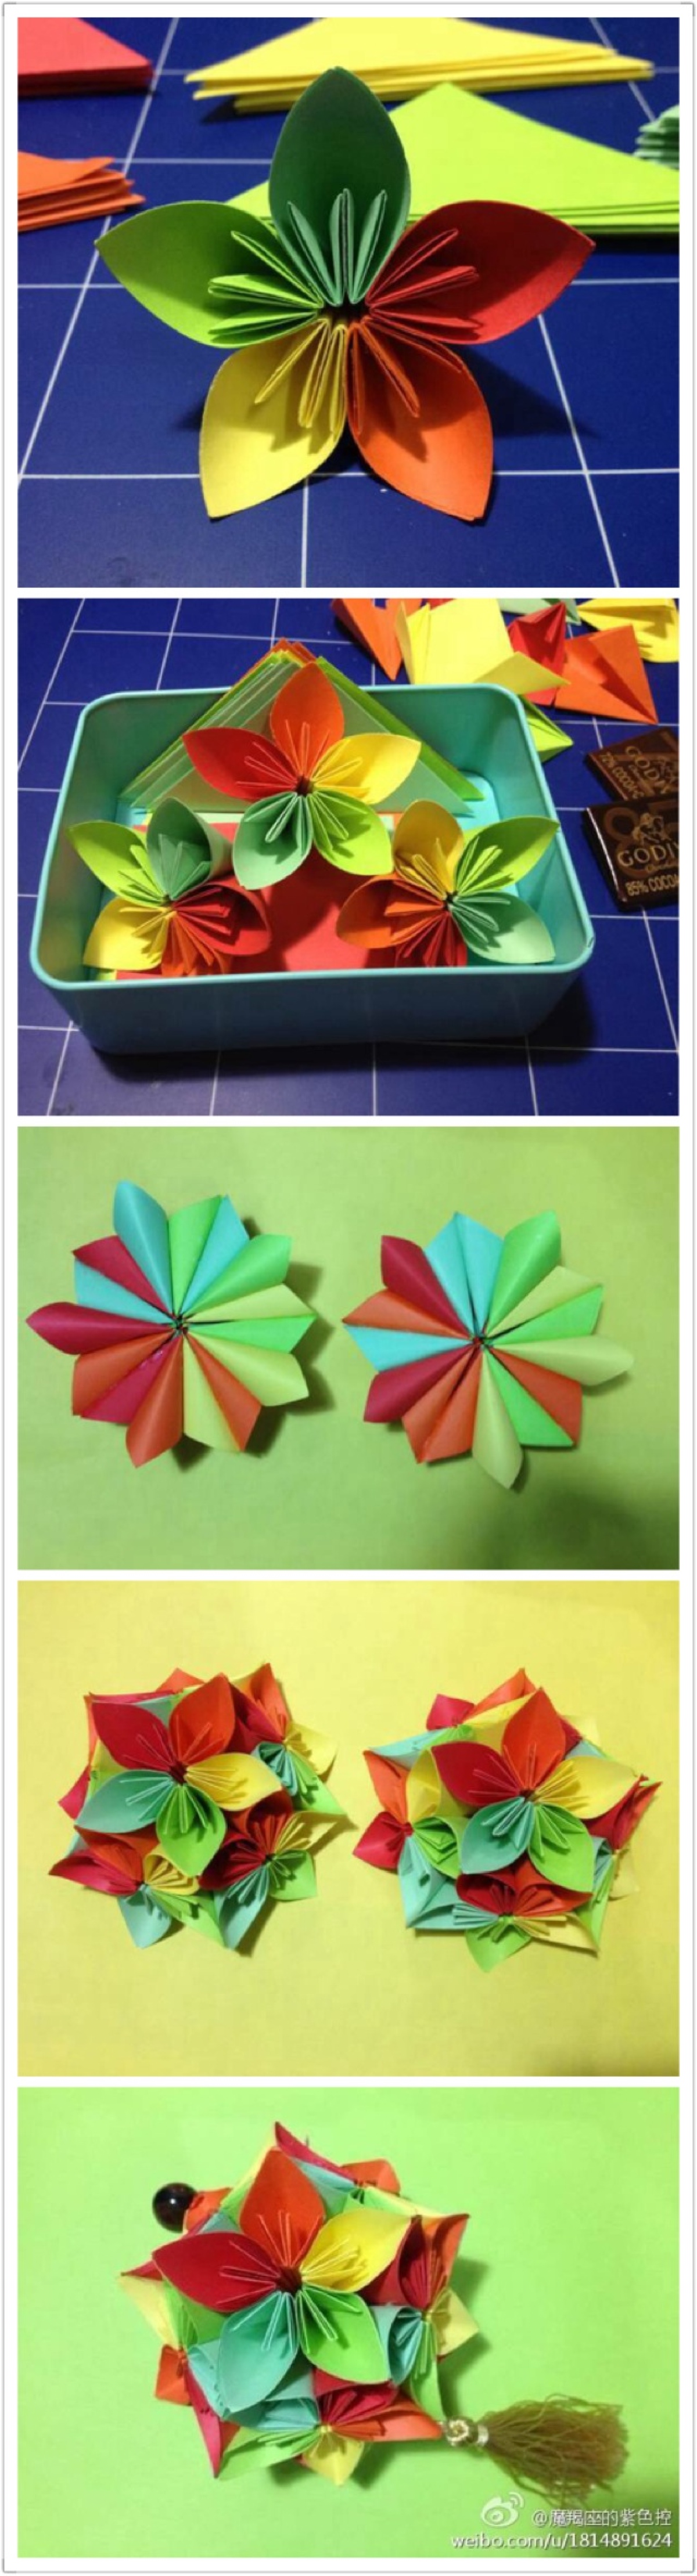 我的折纸手工作品:五色樱花花球.材料:5种颜色的彩色复印纸,白乳.